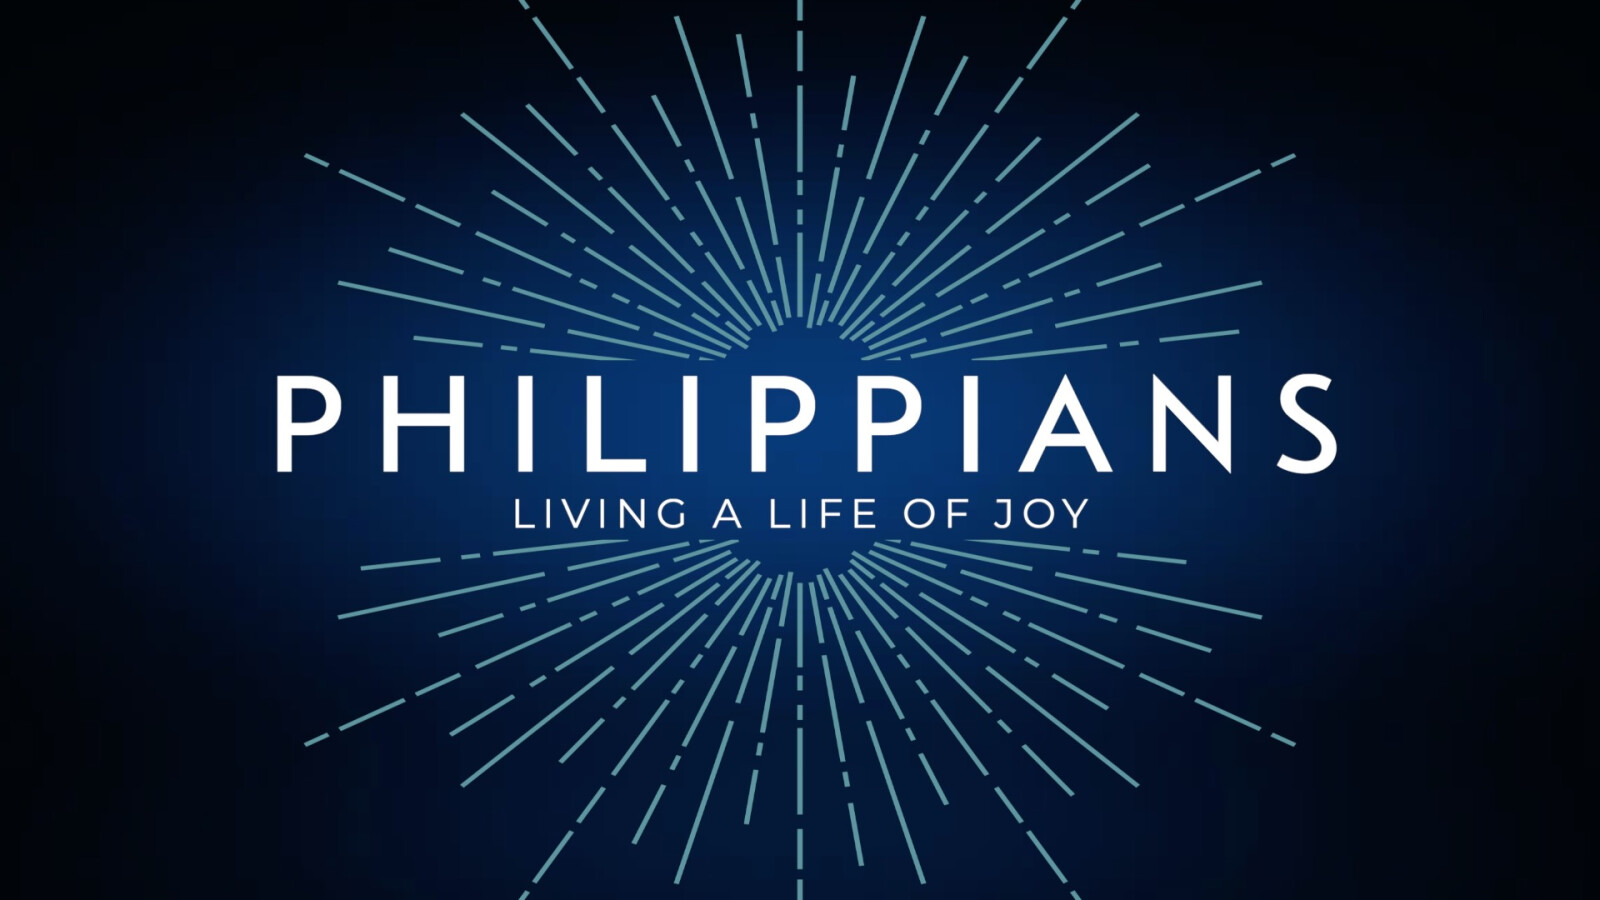 Philippians: Living A Life of Joy